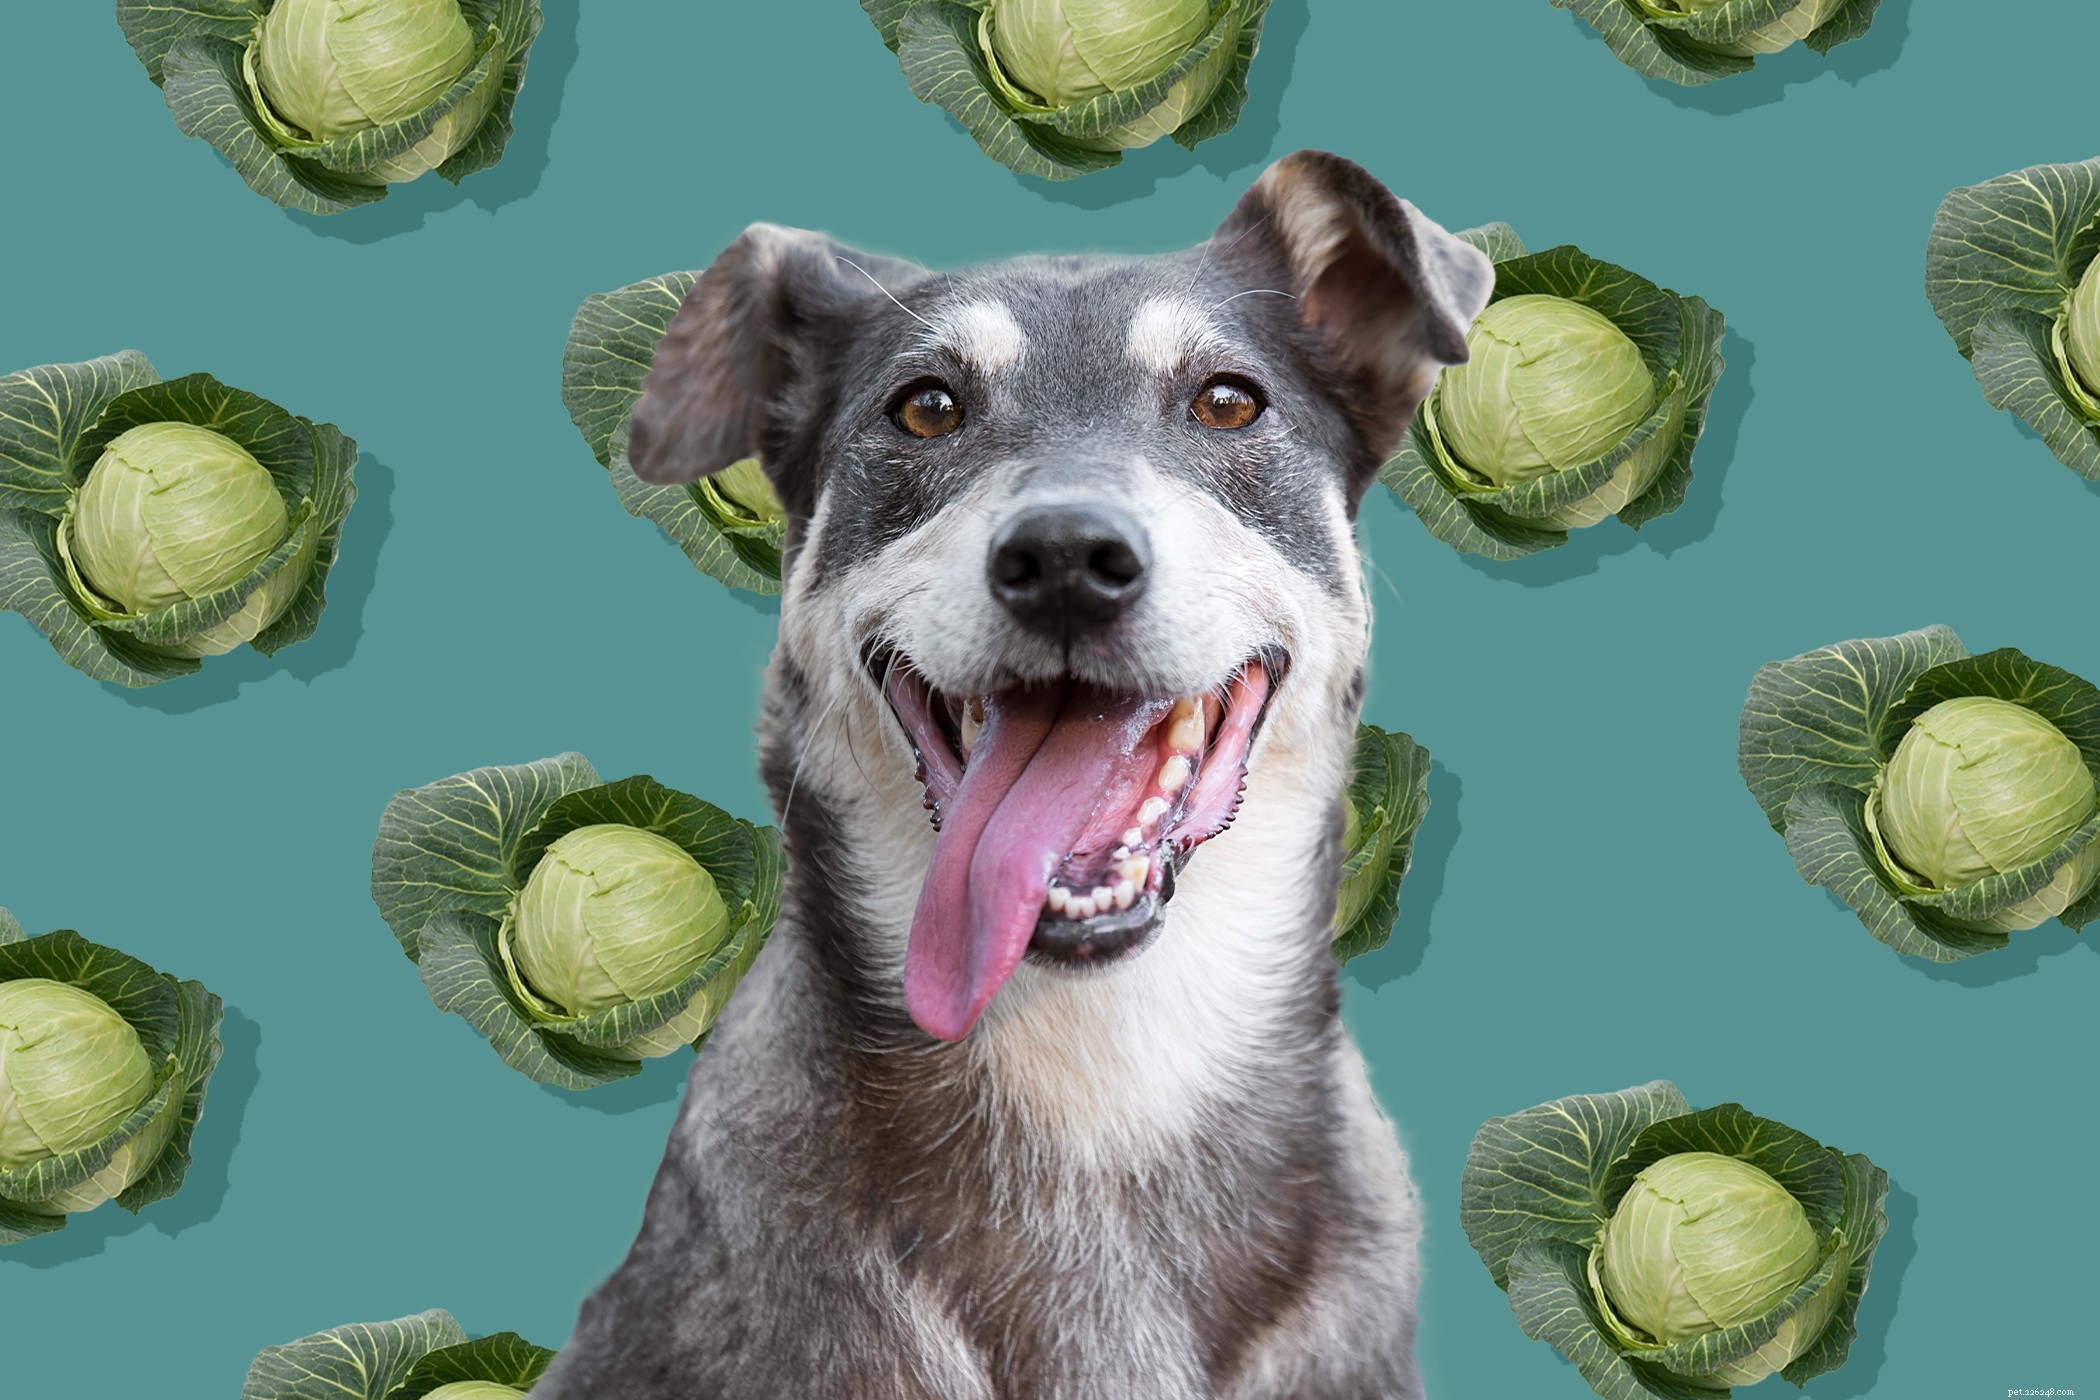 Os cães podem comer repolho? Aqui está o que um veterinário recomenda